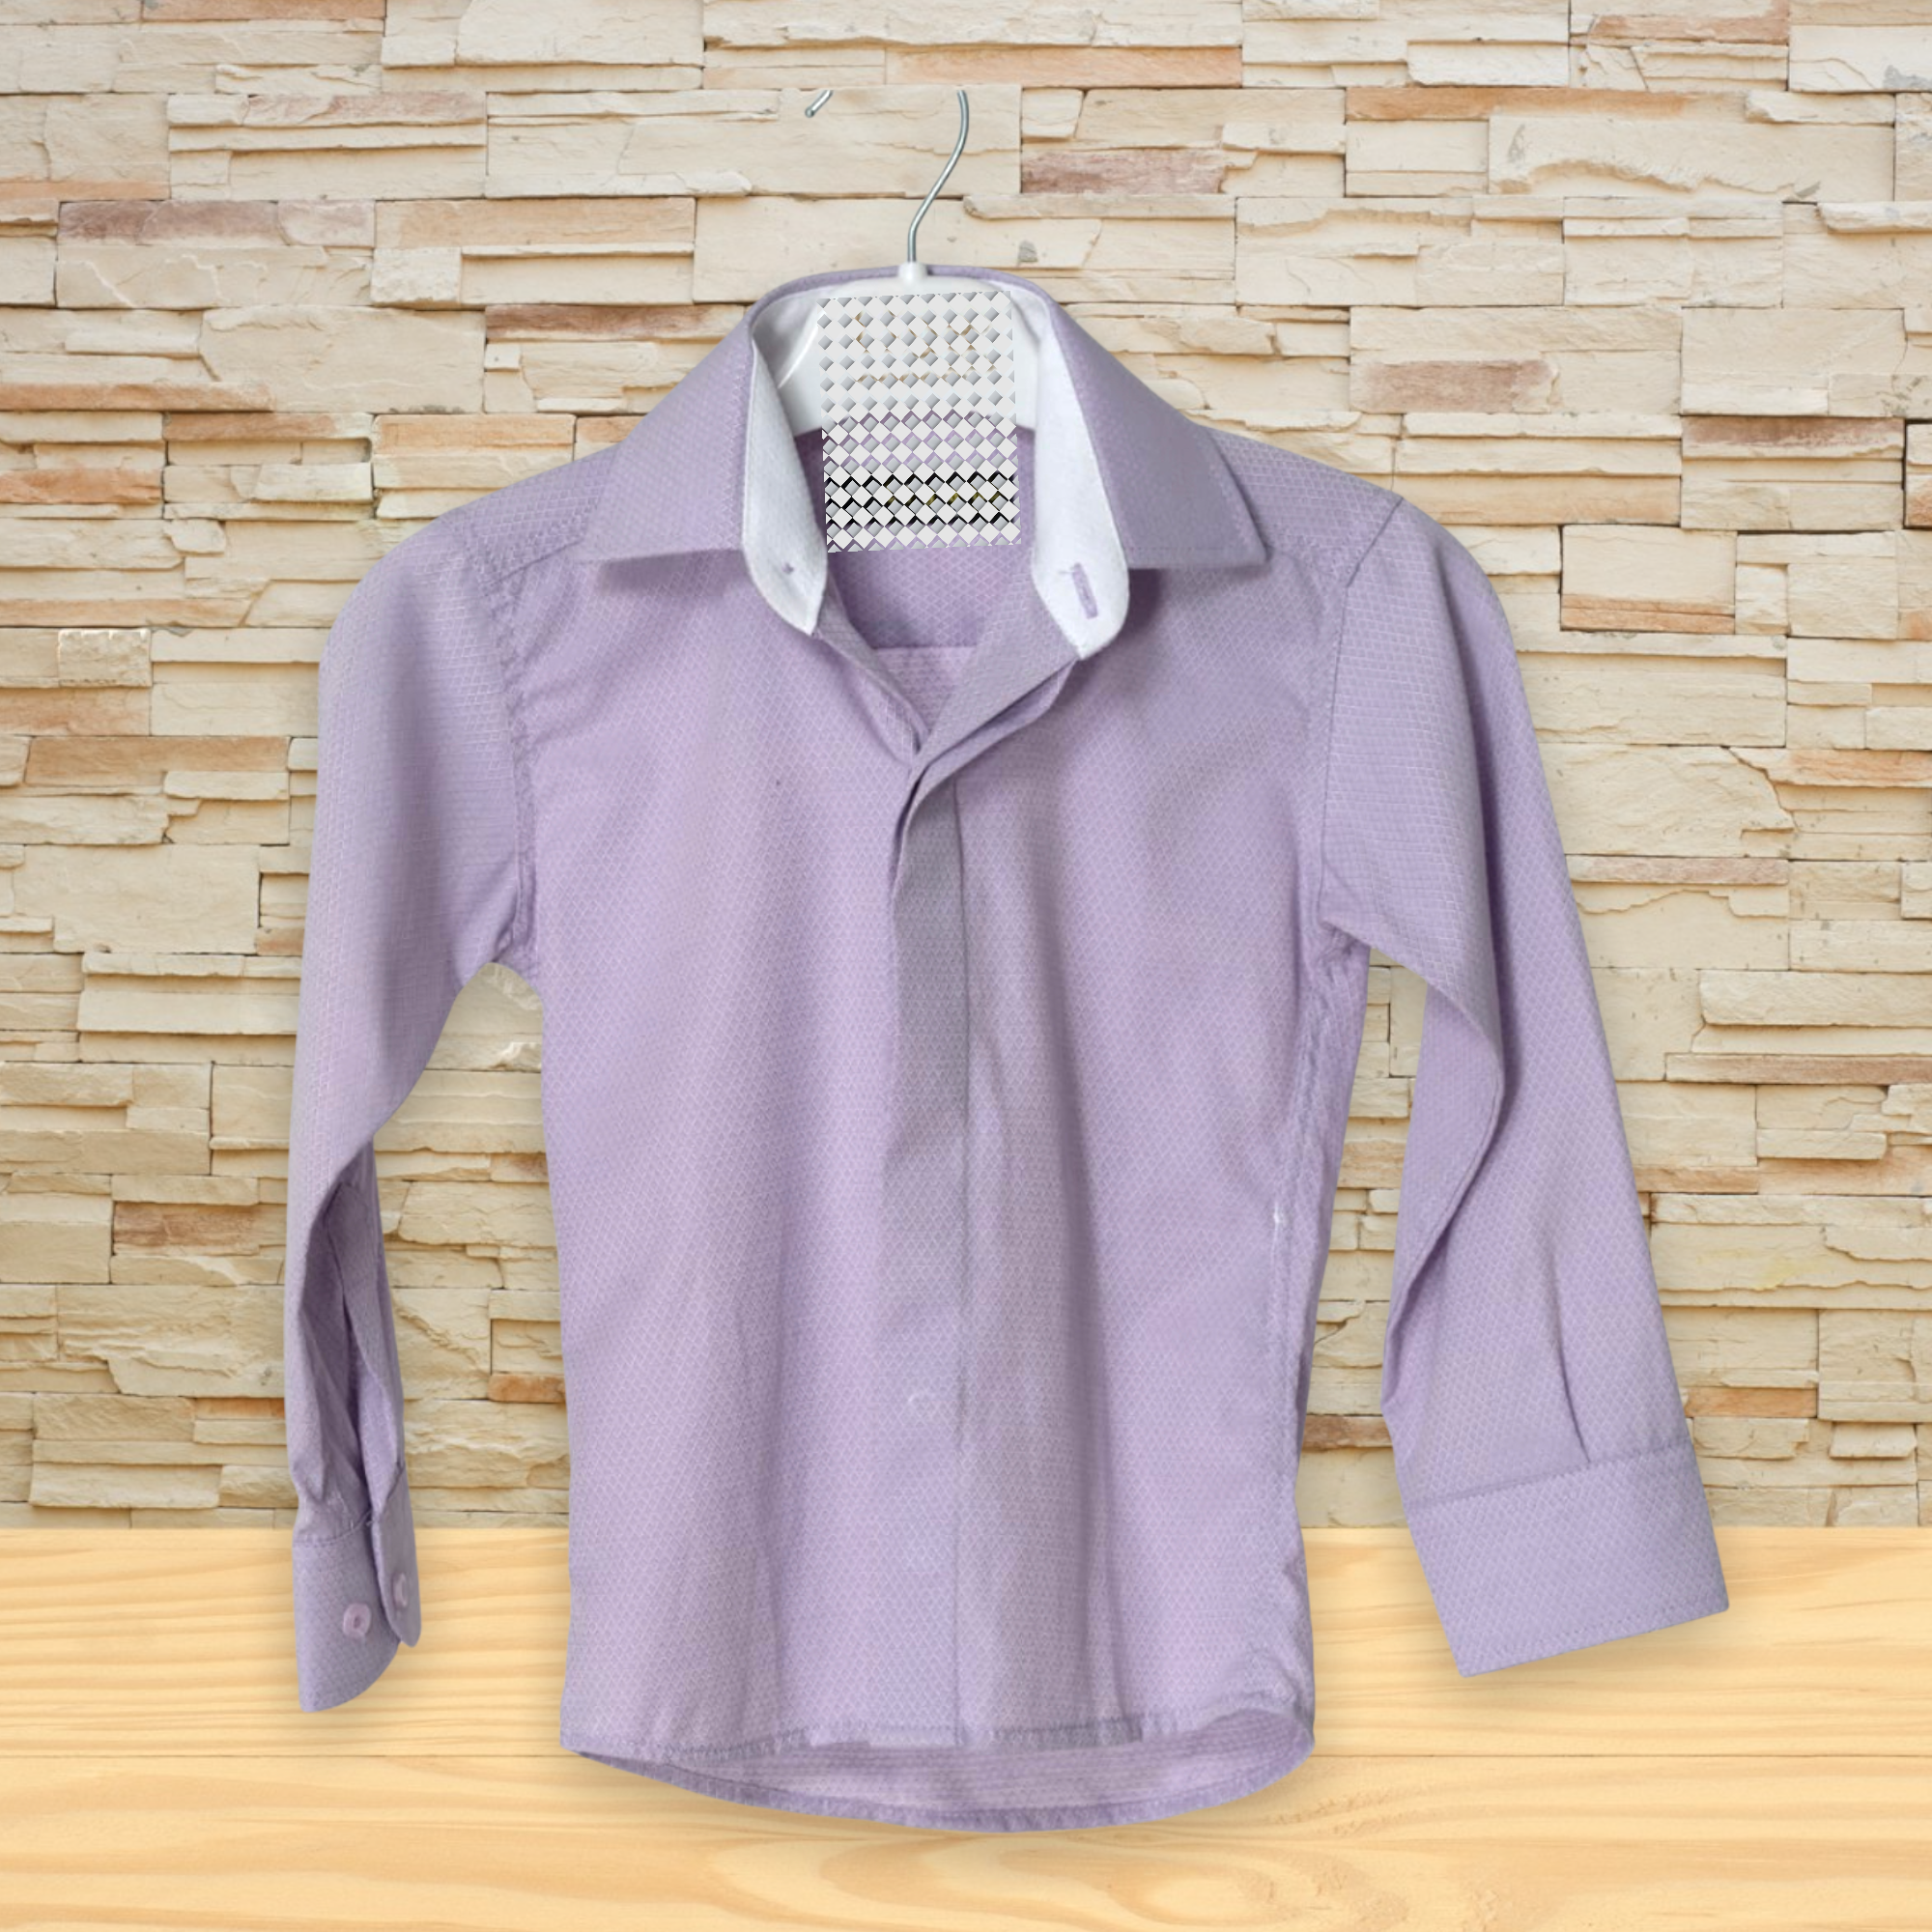 Light purple dress shirt